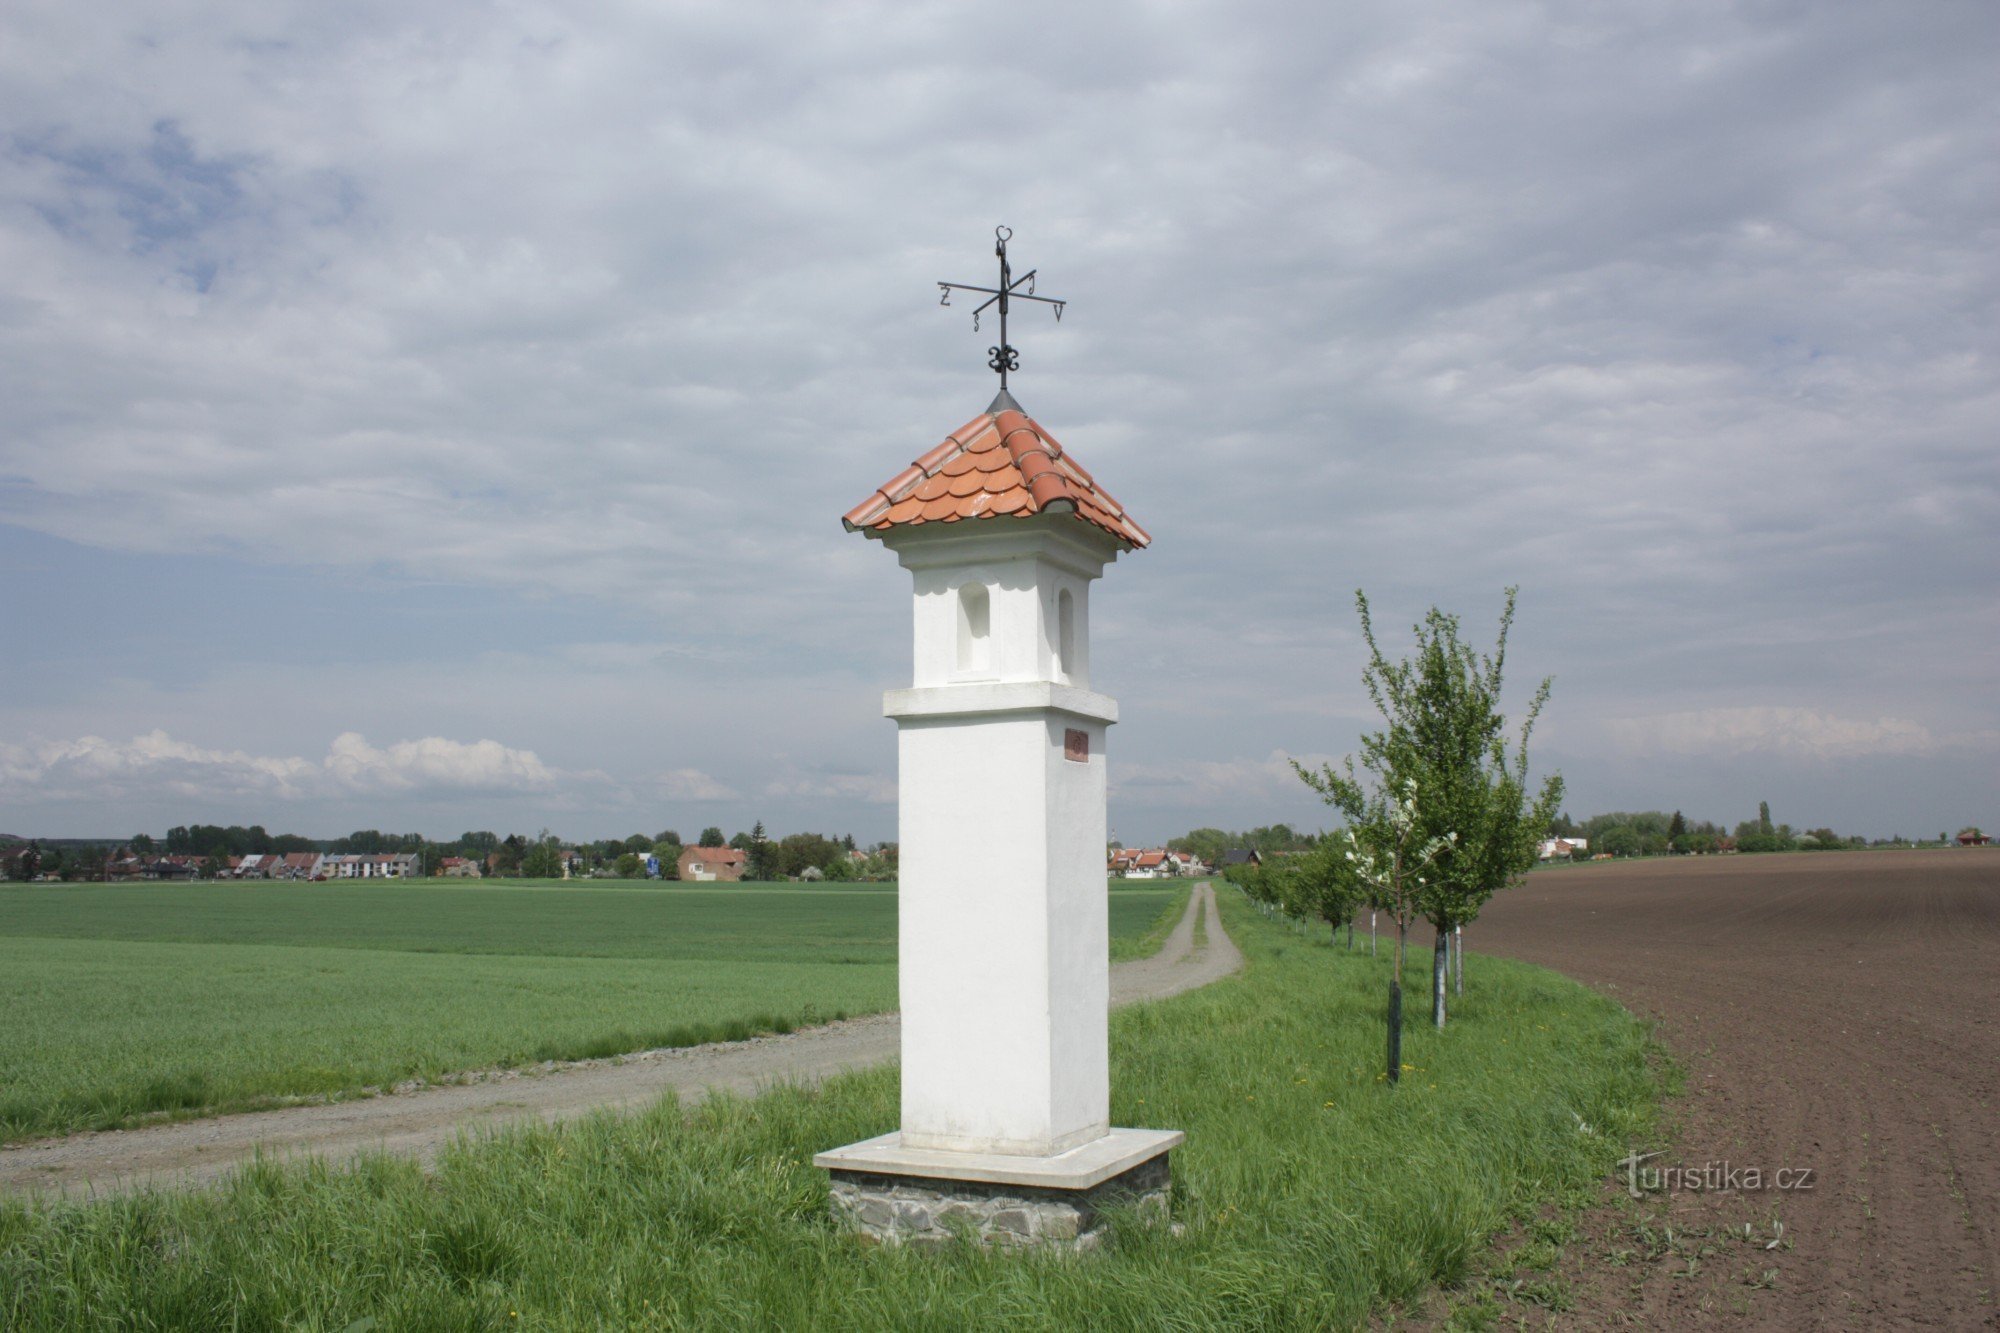 De microregio Němčicko en het kleine sacrale monument Čičiňák